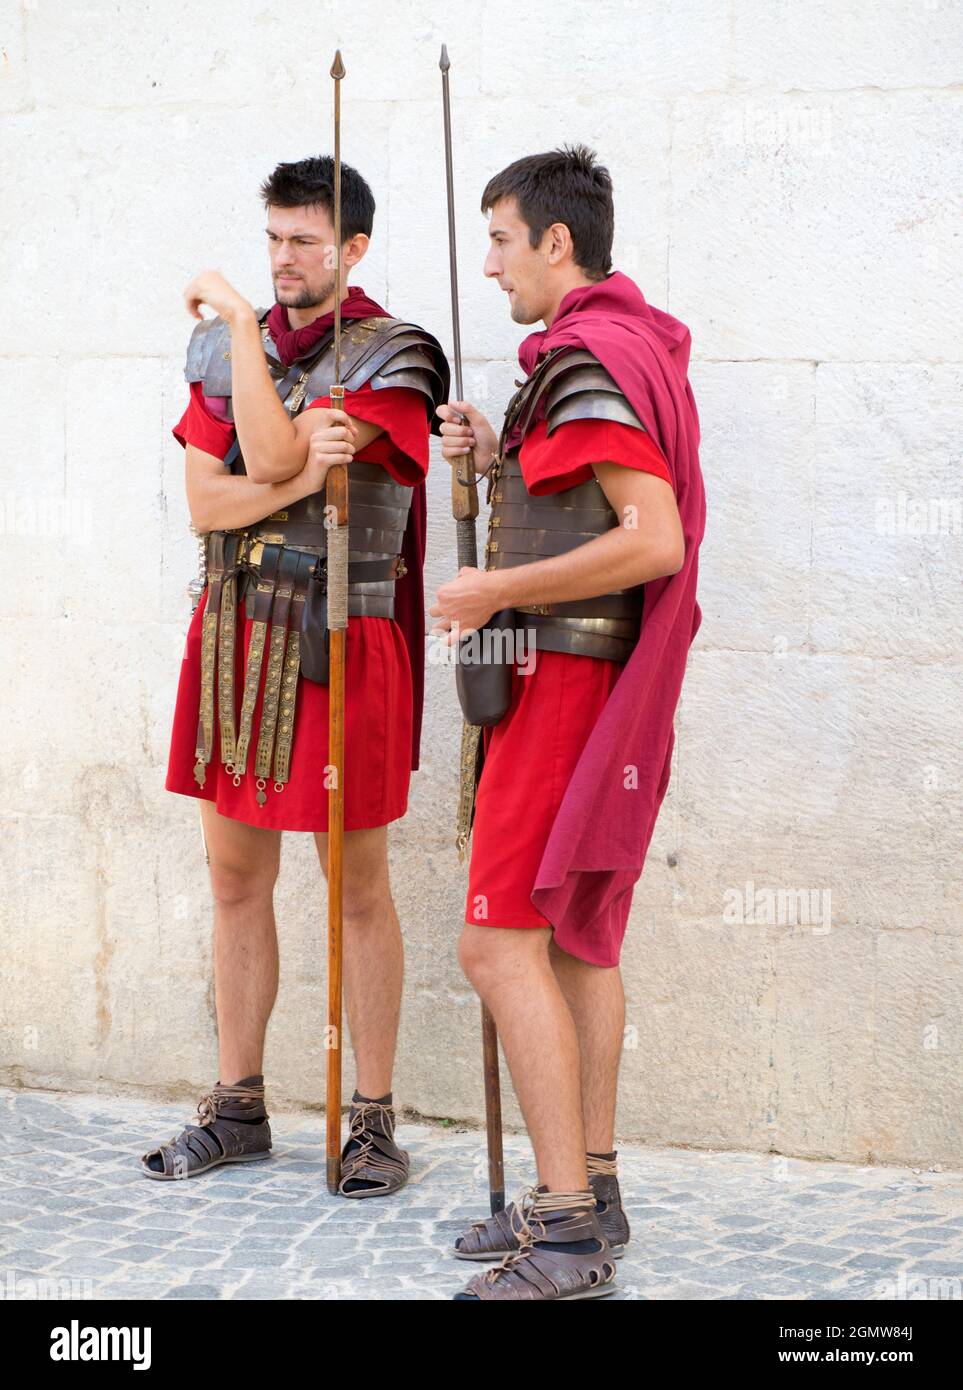 Split, Croatie - 6 août 2016 quelqu'un doit dire à ces légionnaires que l'Empire romain est tombé aroun il y a 1500 ans. Ils sont toujours en service guardi Banque D'Images